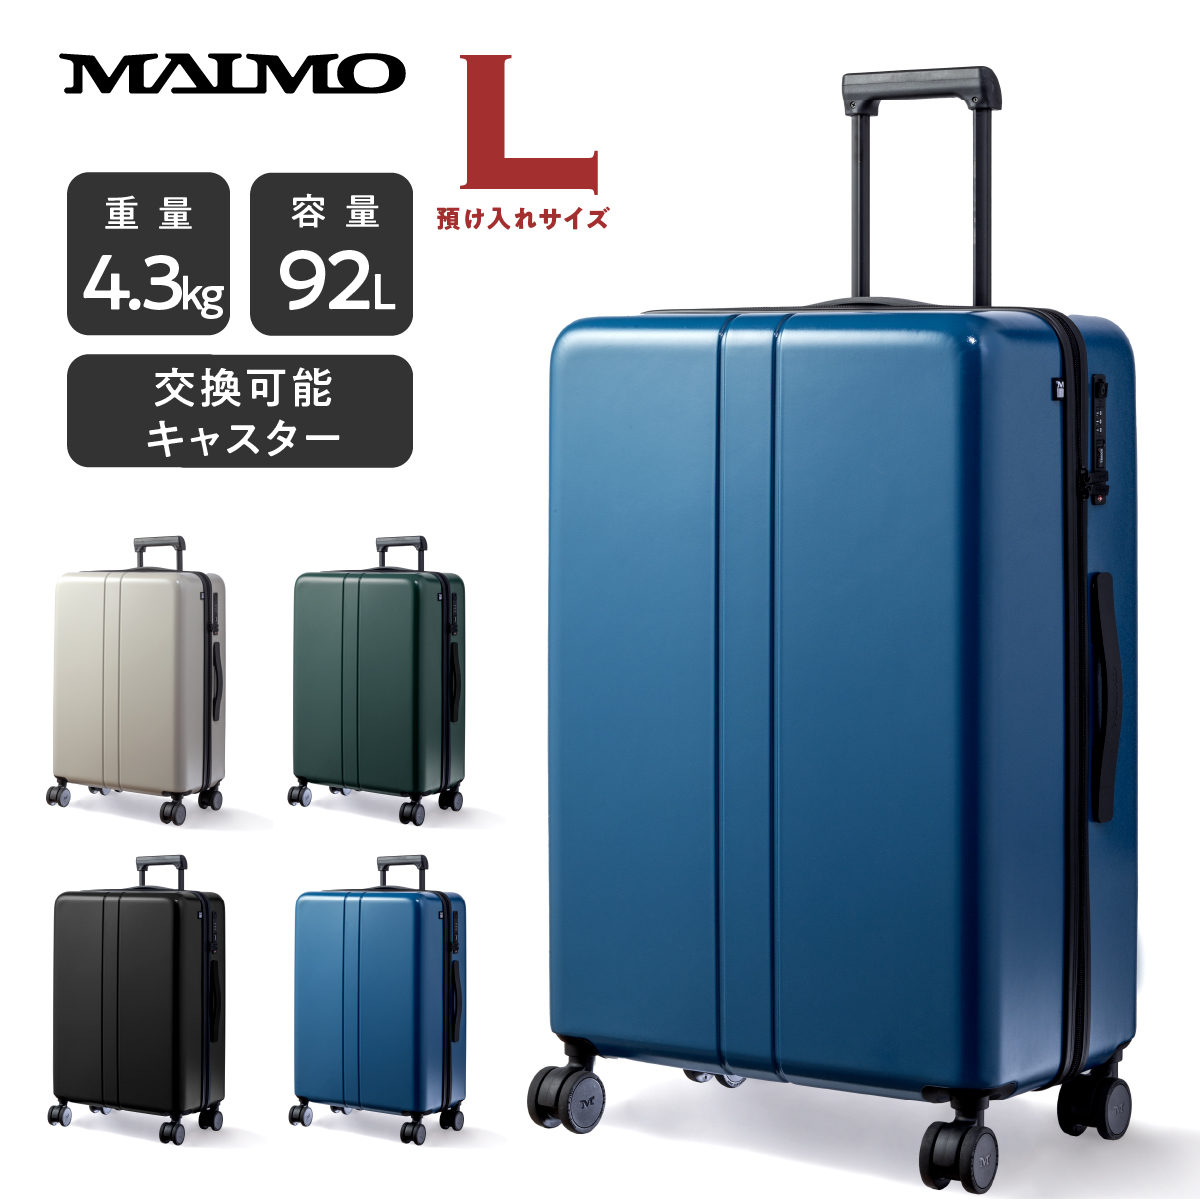 スーツケース キャリーケース MAIMO公式 キャリーバッグ Lサイズ 日本企業 超軽量 大容量 静音 ダブルキャスター 最新セキュリティ  :M2ND-L-01:MAIMOブランド直営店 通販 